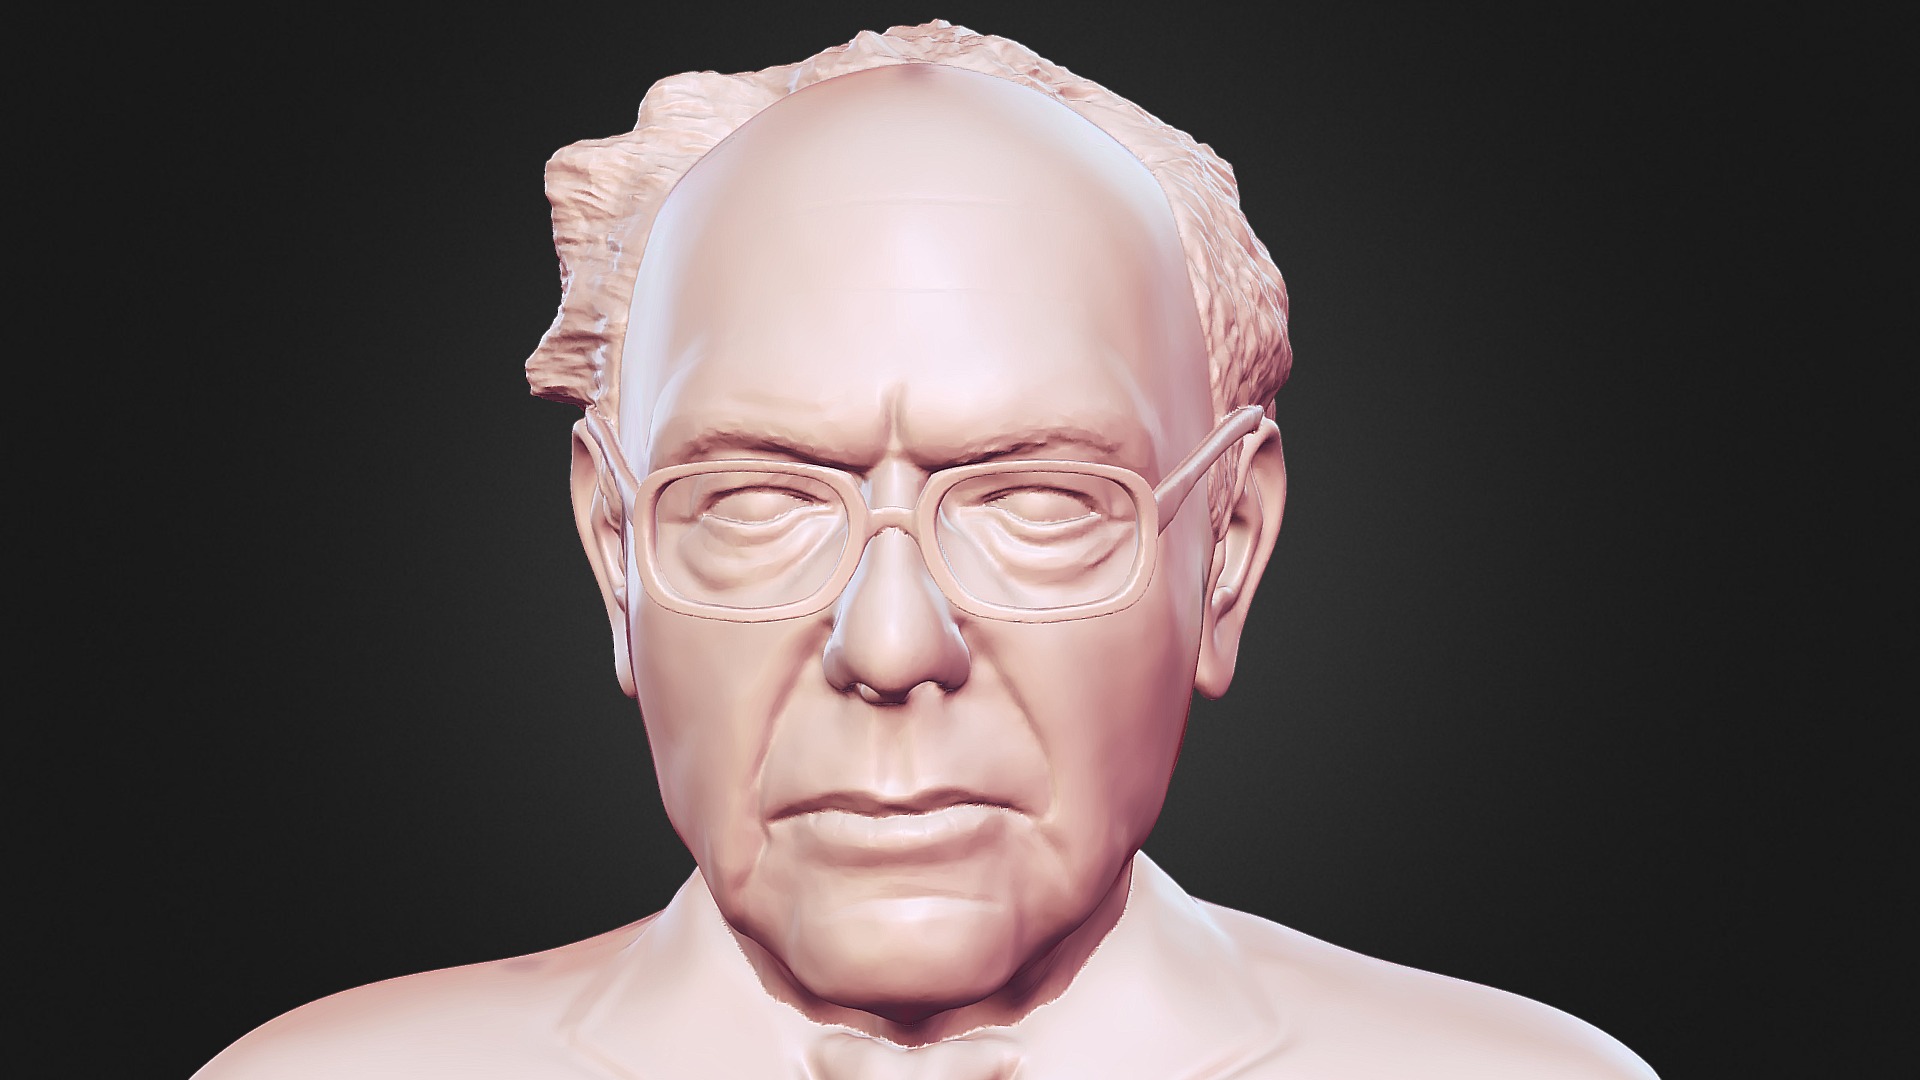 3D model Bernie Sanders 3D printable portrait bust - This is a 3D model of the Bernie Sanders 3D printable portrait bust. The 3D model is about a man with glasses.